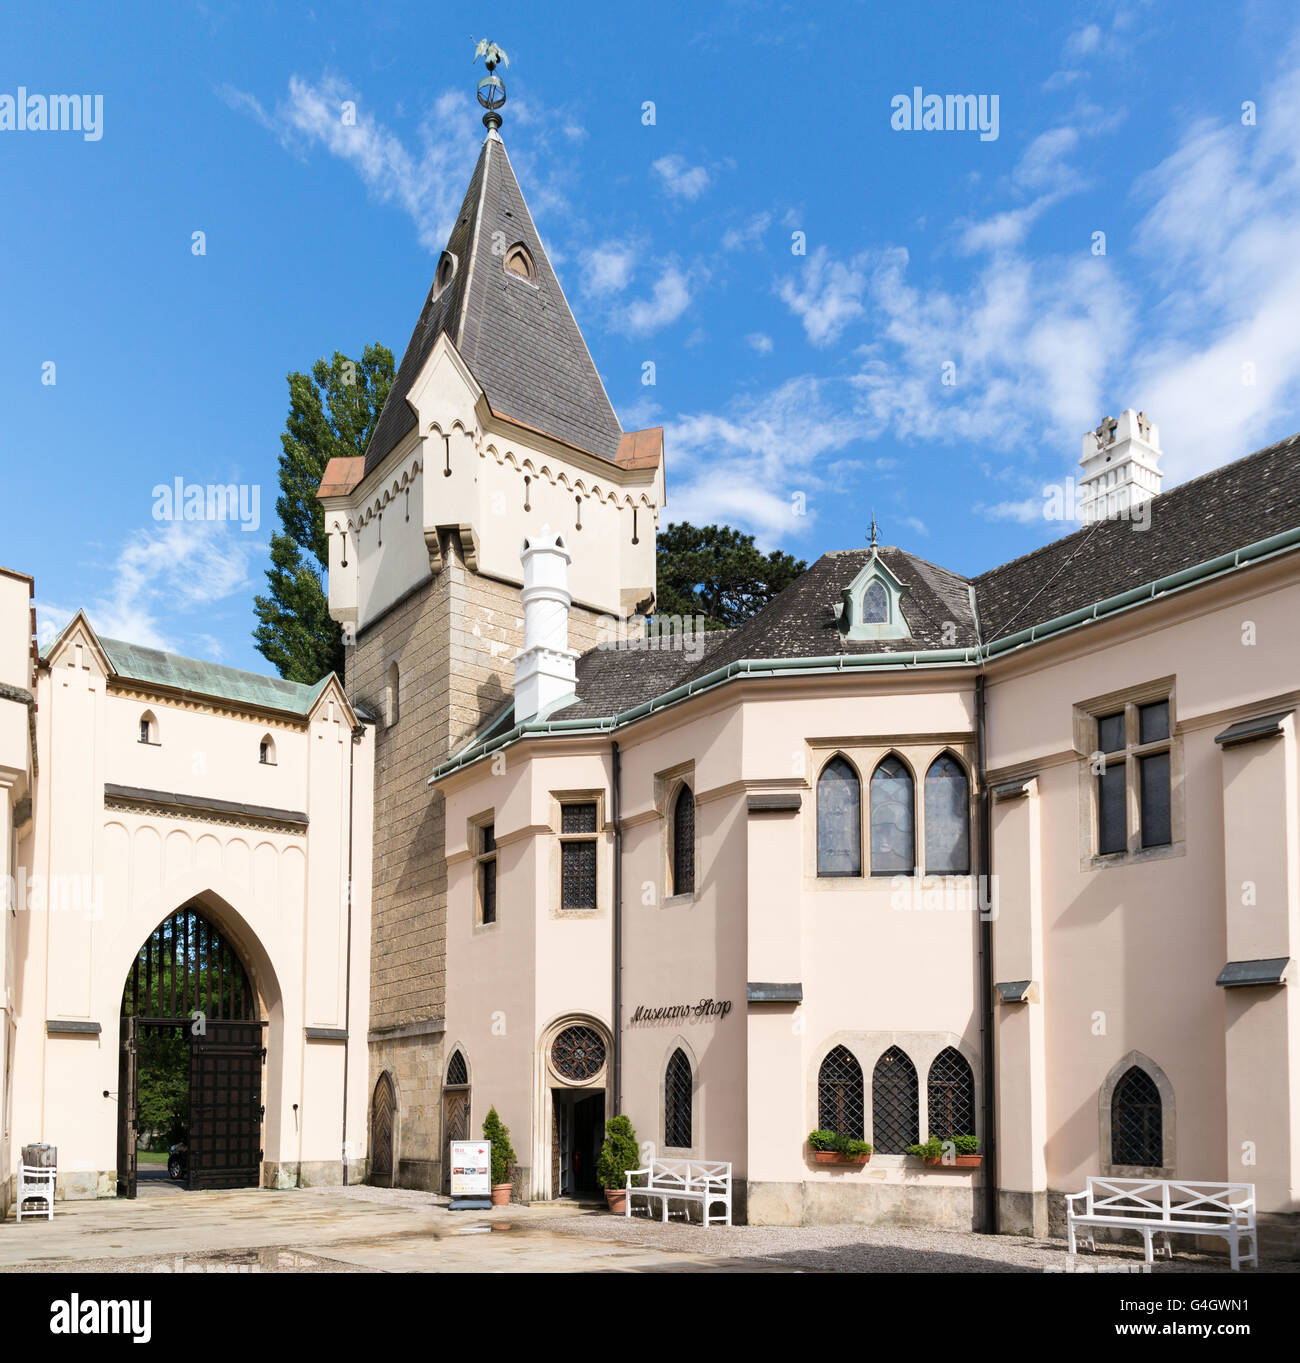 Courtyard of Franzensburg Castle in Laxenburg castle gardens near Vienna, Lower Austria Stock Photo